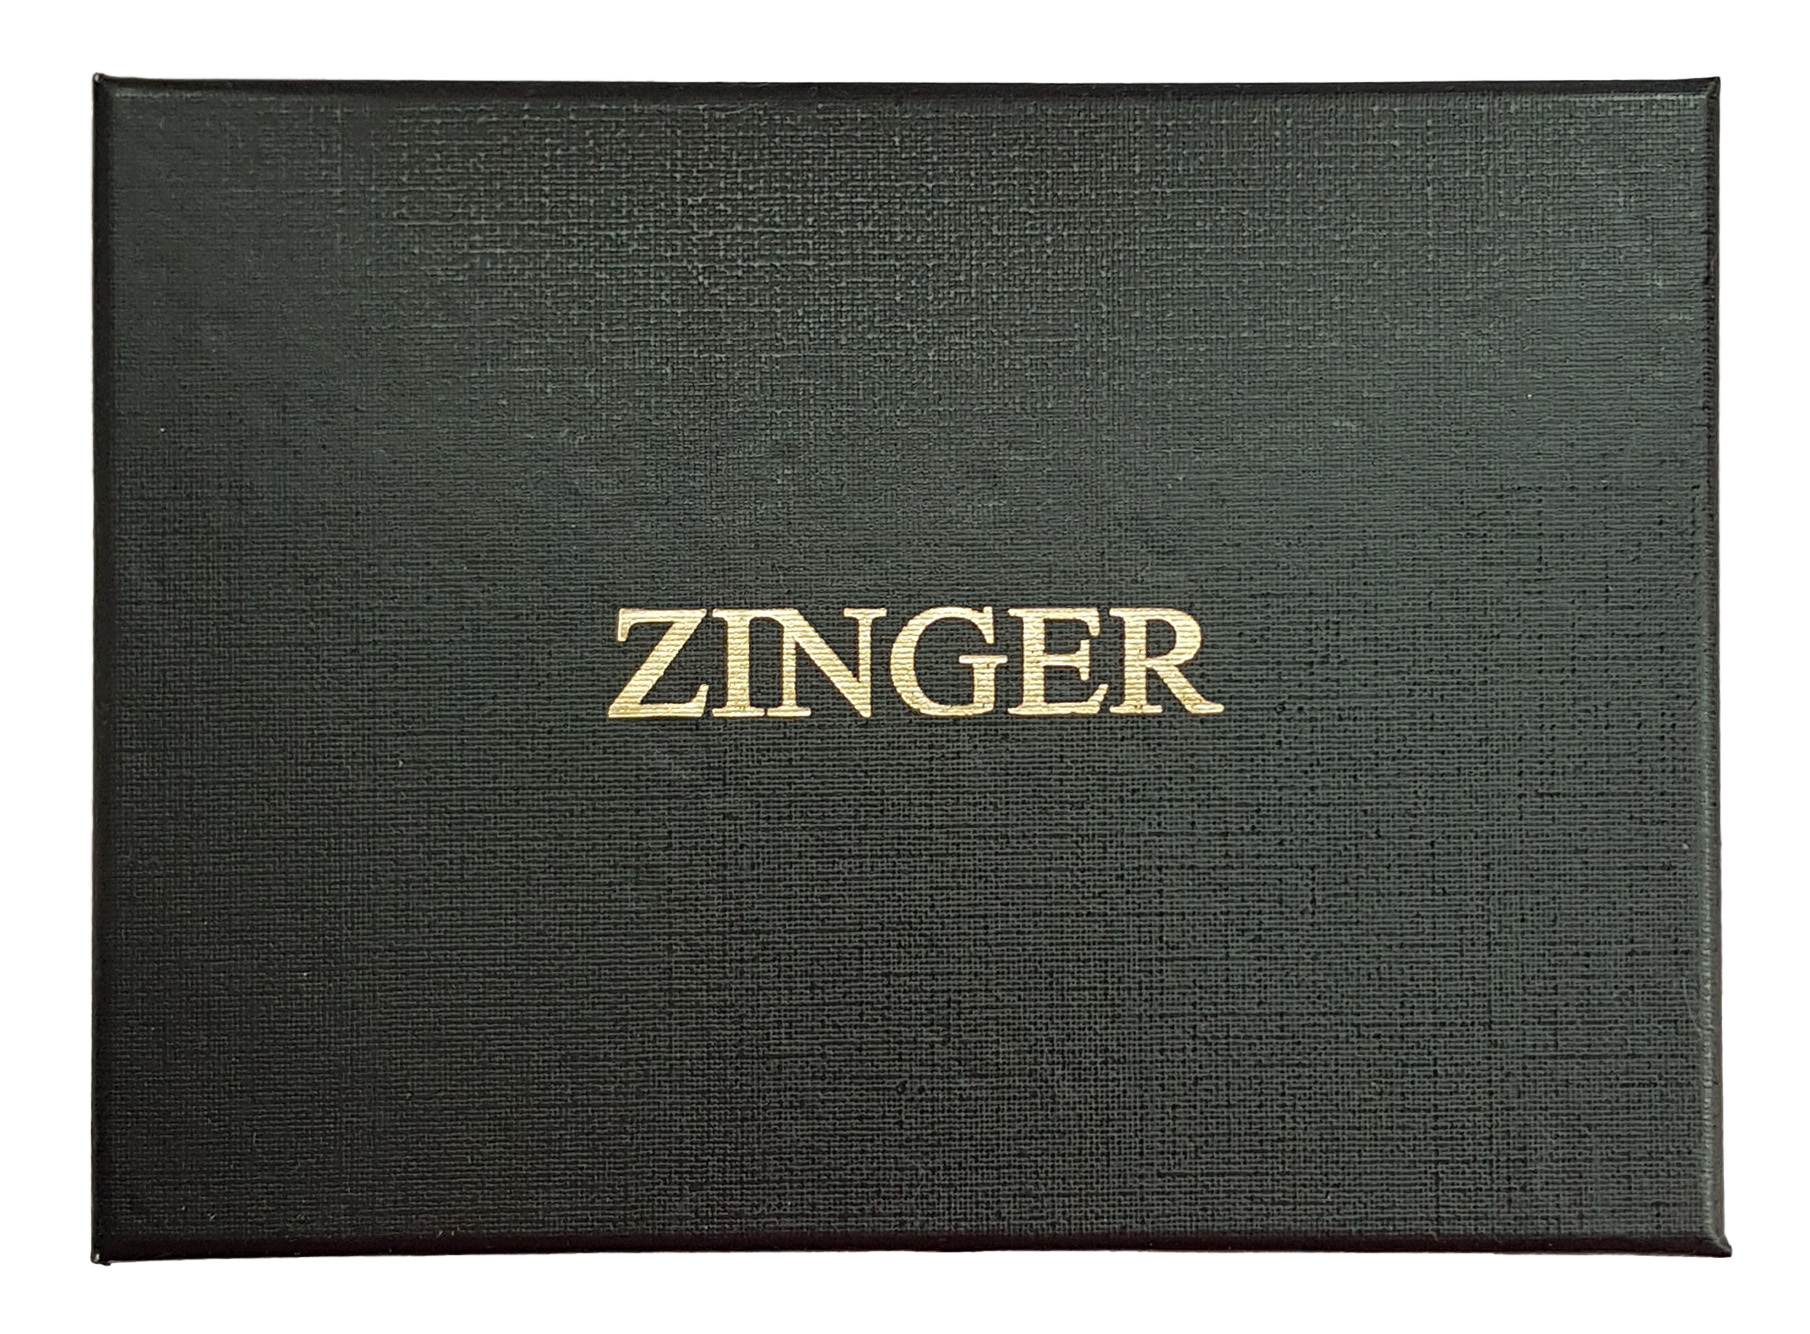 Маникюрный набор Zinger Premium-качества серебристый 7 предметов + пинцет менеджмент качества